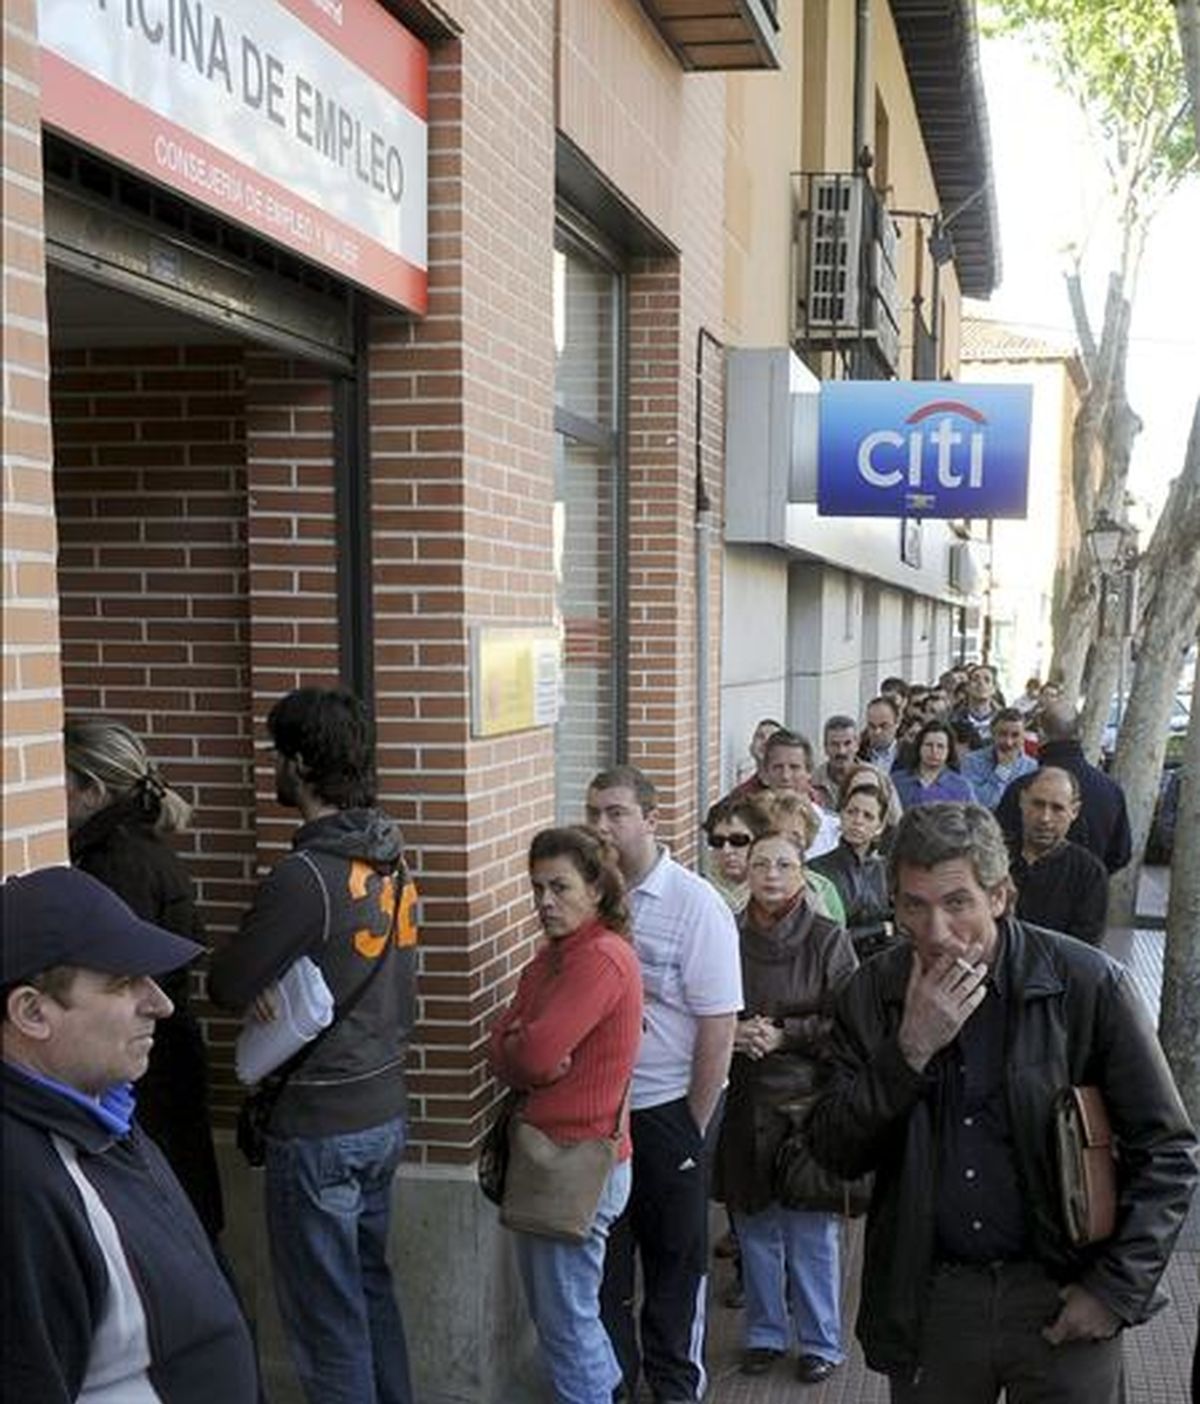 Desempleados hacen cola hoy frente a una oficina de empleo en Alcalá de Henares (Madrid). La tasa de paro aumentó 3,45 puntos hasta situarse en el 17,36% de la población activa en el primer trimestre del año y el número de desempleados alcanzó los 4.010.700, tras incrementarse en 802.800 personas en ese periodo, según la Encuesta de Población Activa (EPA) difundida hoy por el INE.  EFE